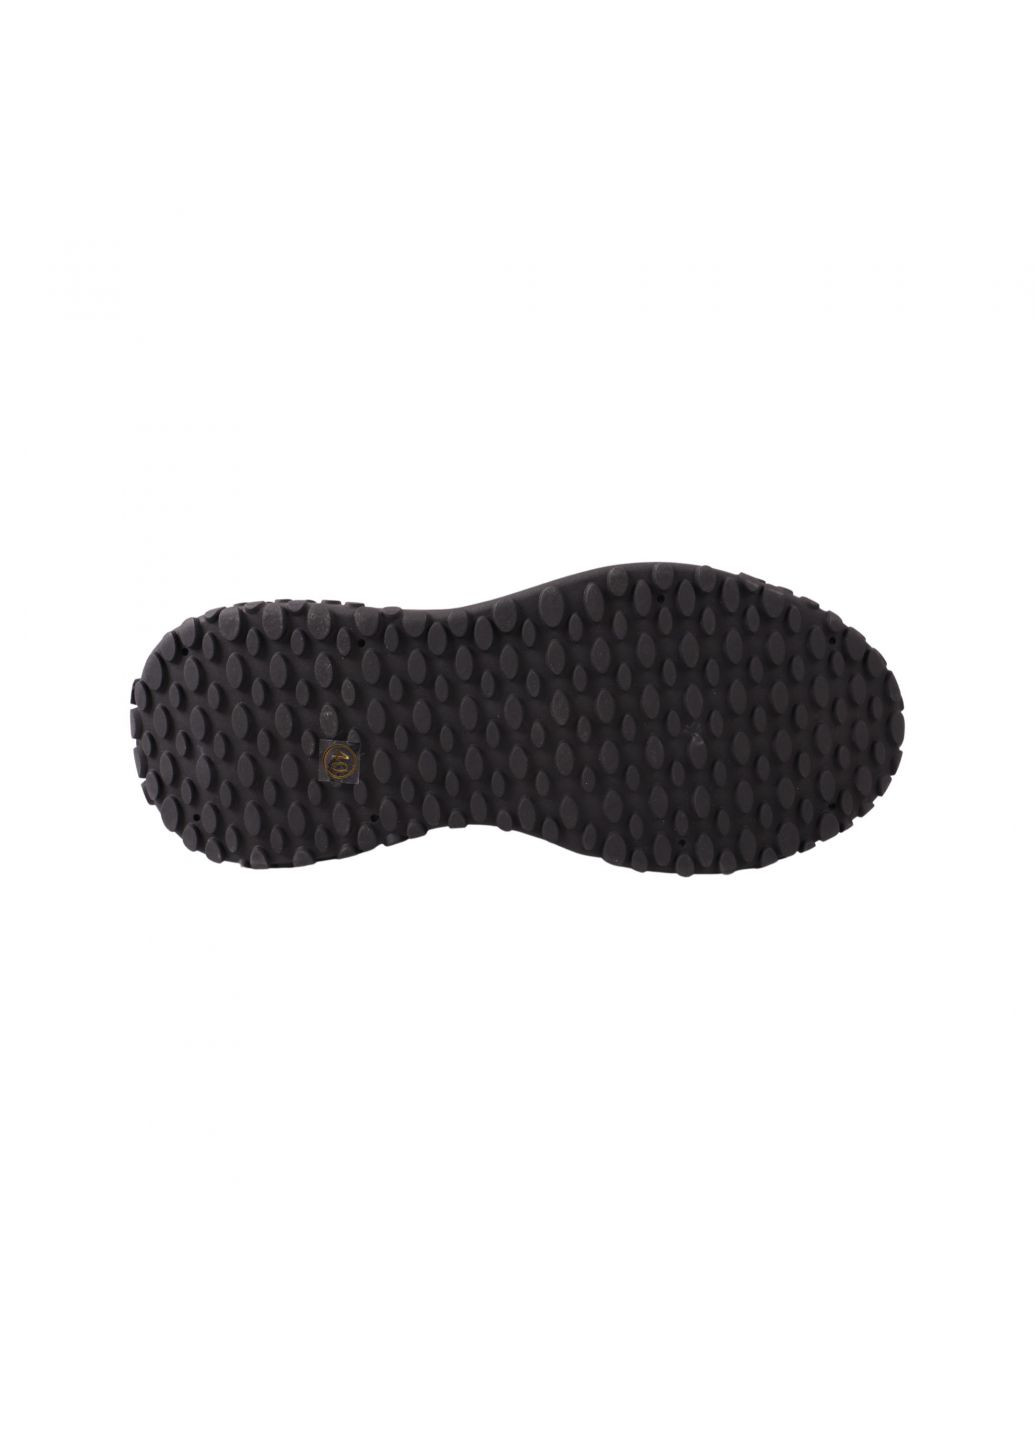 Черные кроссовки мужские черные натуральная кожа Clemento 51-23DTS